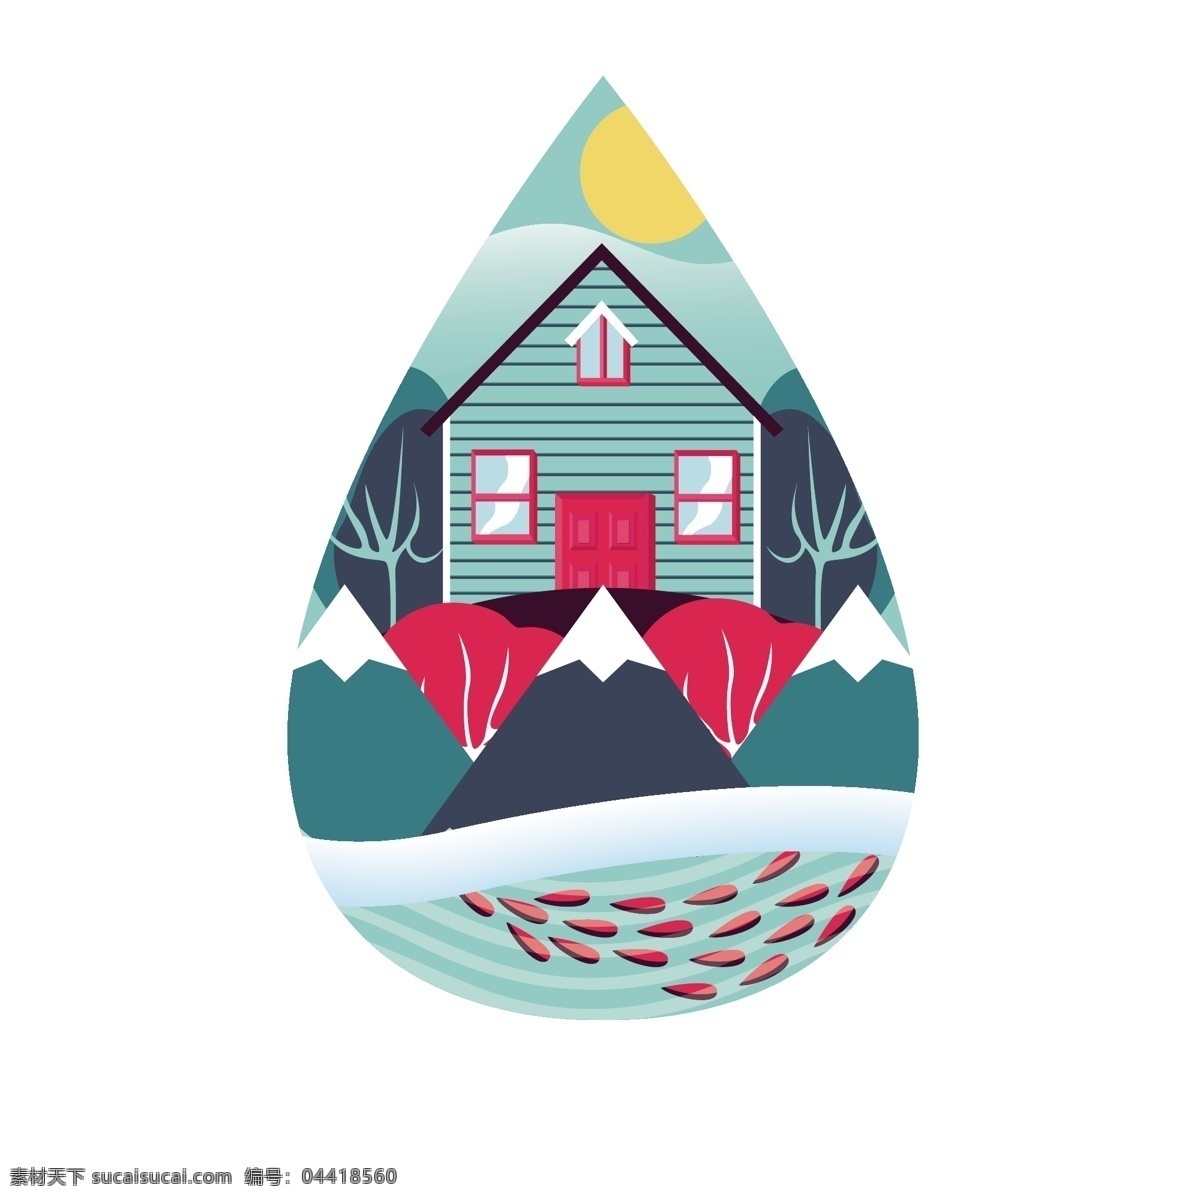 卡通 水滴 可爱 房子 矢量 水滴形状 拟人的鱼 卡通房子 可爱的房子 水资源 环境 环境保护